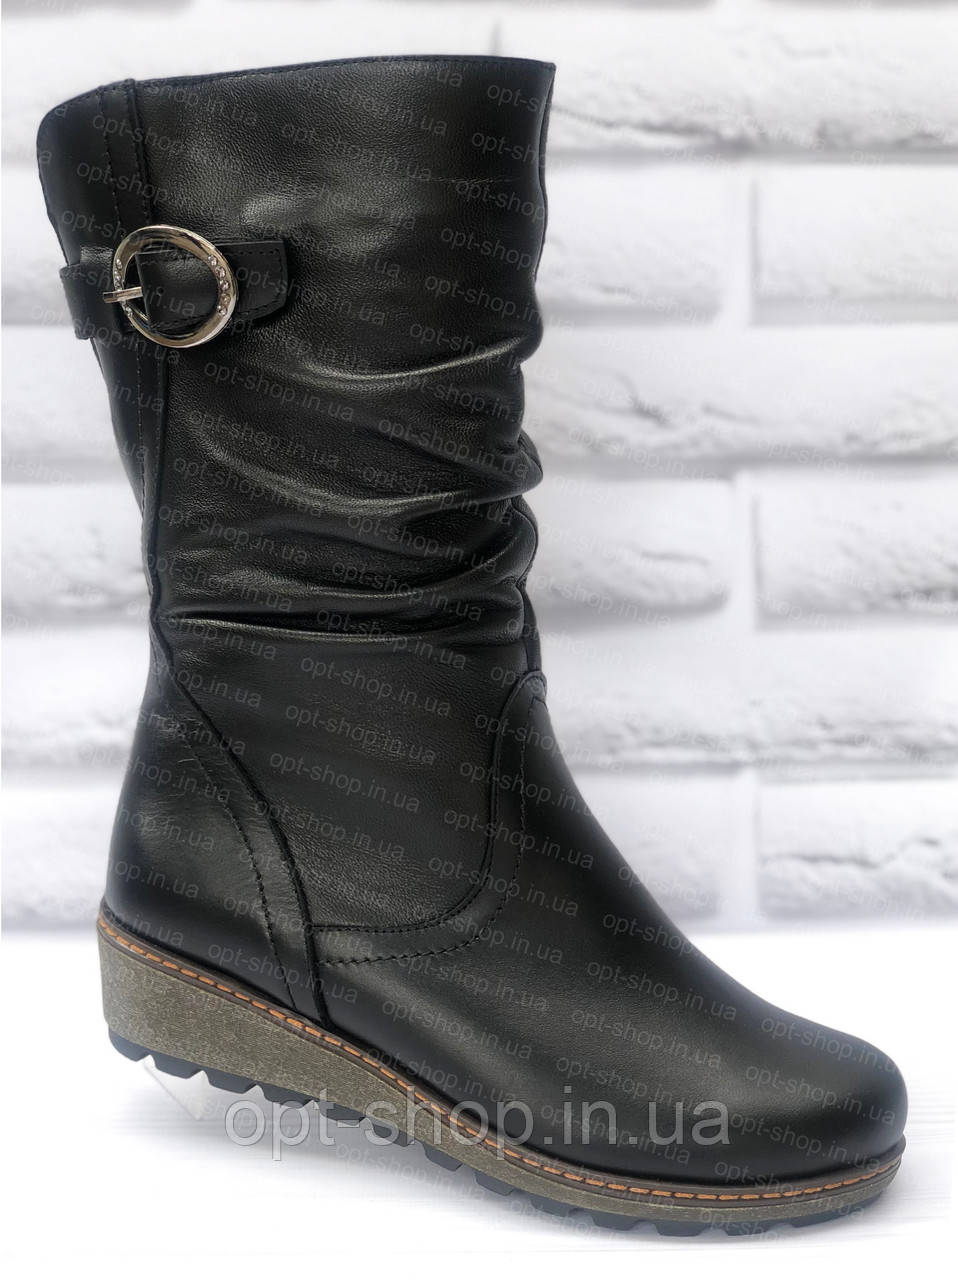 Жіночі зимові чоботи чоботи шкіряні на повну широку ногу 36-42 розмір (код: З-212)